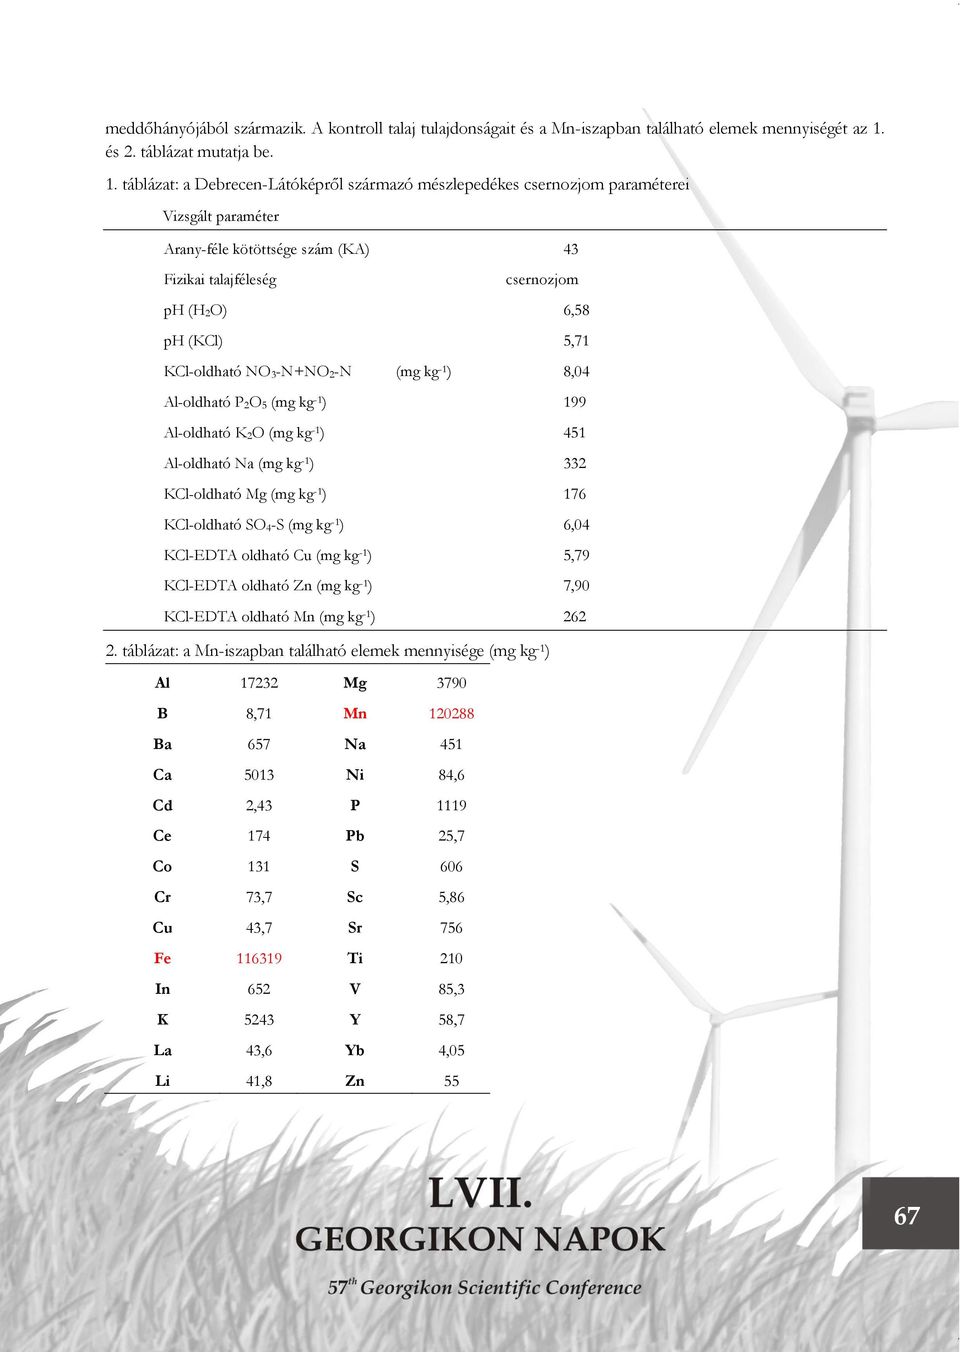 táblázat: a Debrecen-Látóképről származó mészlepedékes csernozjom paraméterei Vizsgált paraméter Arany-féle kötöttsége szám (KA) 43 Fizikai talajféleség csernozjom ph (H 2O) 6,58 ph (KCl) 5,71